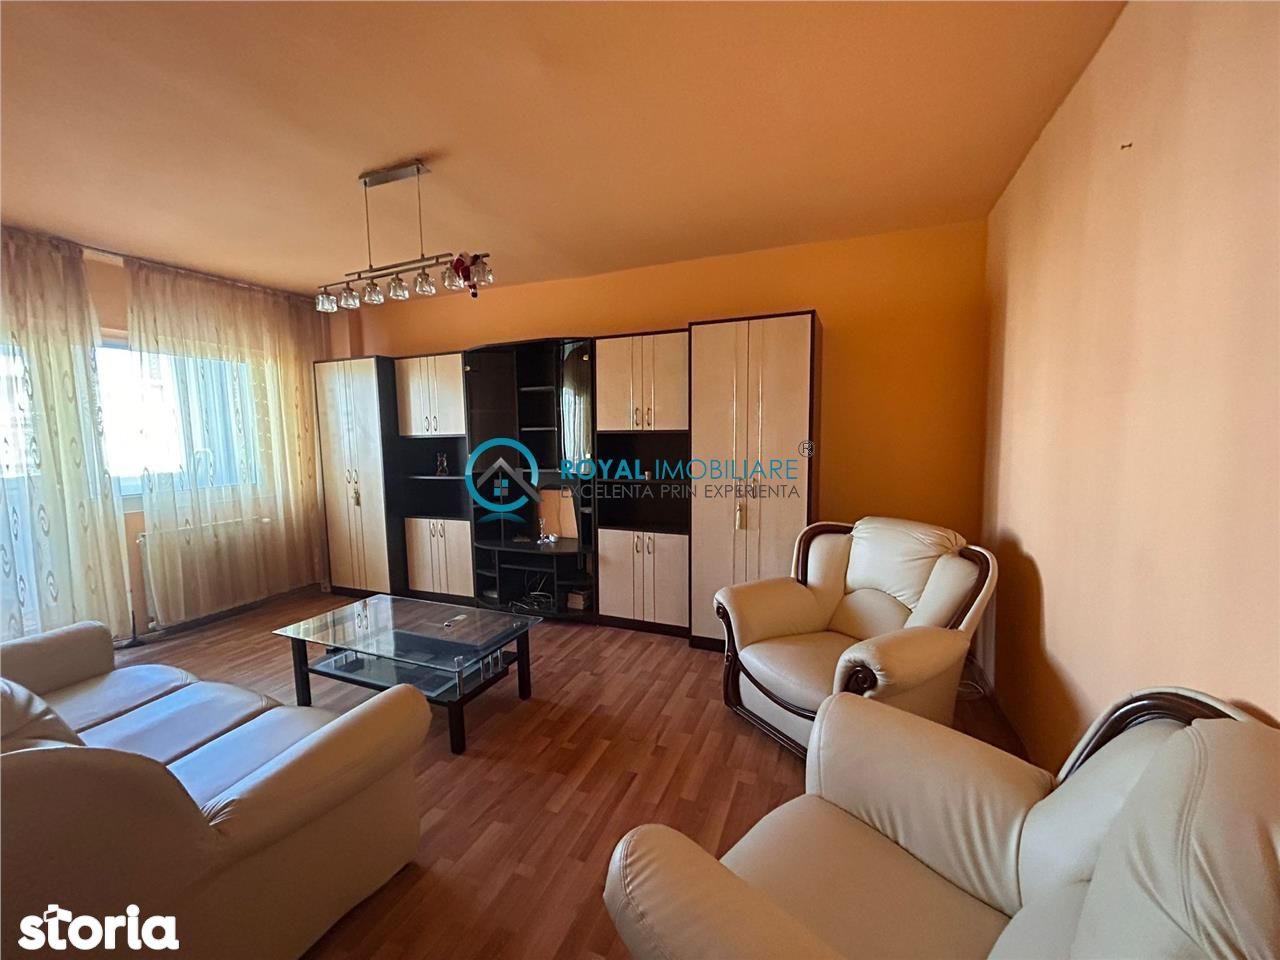 Royal Imobiliare-Vanzare Apartament 3 camere-zona Cantacuzino